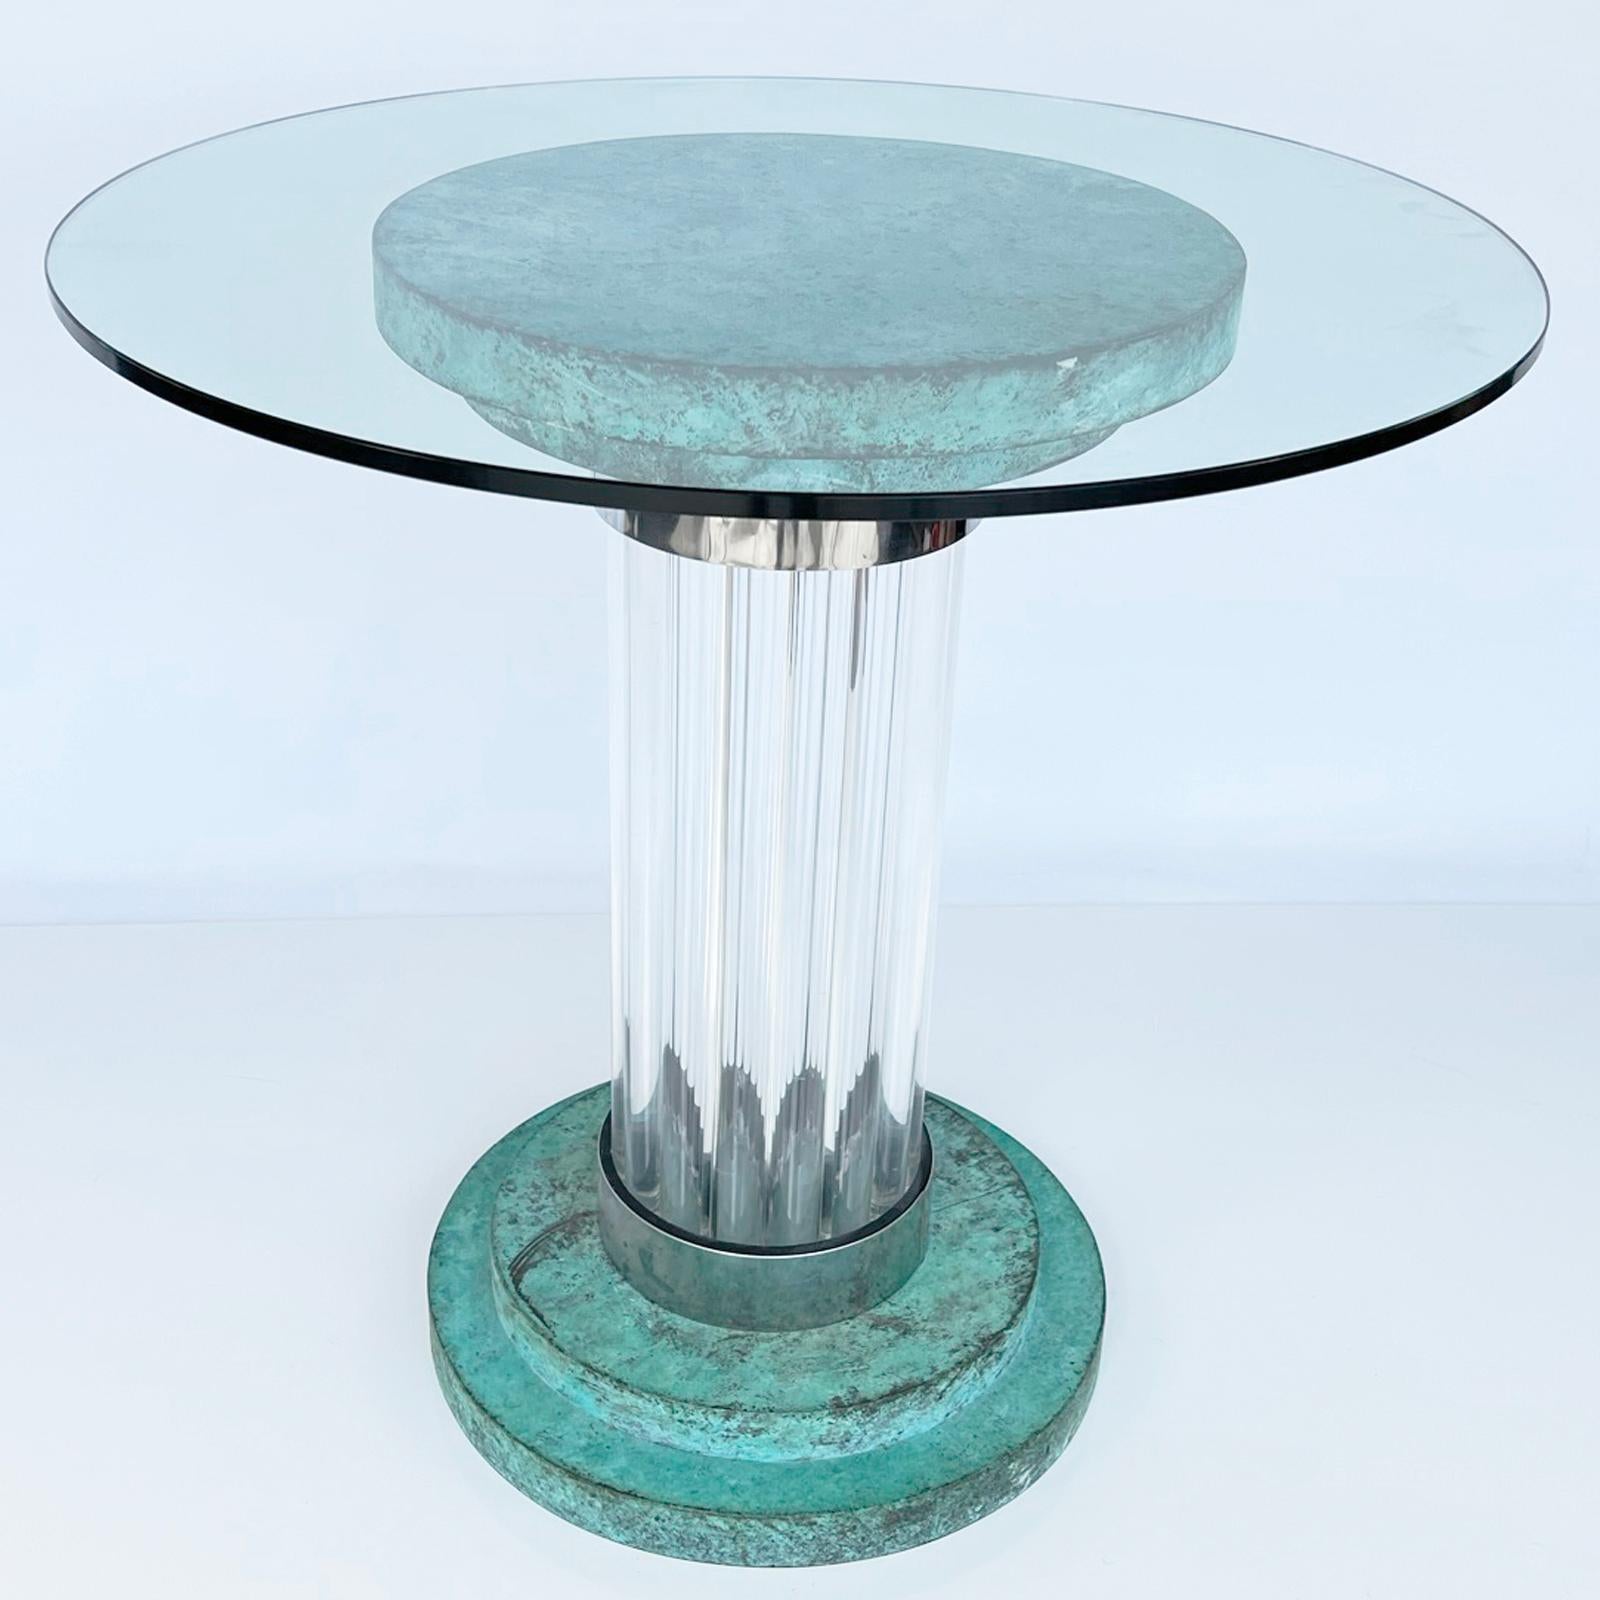 Sockeltisch von Romeo Rega mit runder Glasplatte, auf einem Sockel aus abgestuften Kupferscheiben mit Grünspan-Finish, erhöht auf einer Säule aus Lucite-Stäben mit verchromten Metallbändern, auf passendem abgestuften Sockel. 

Der Tisch kann als